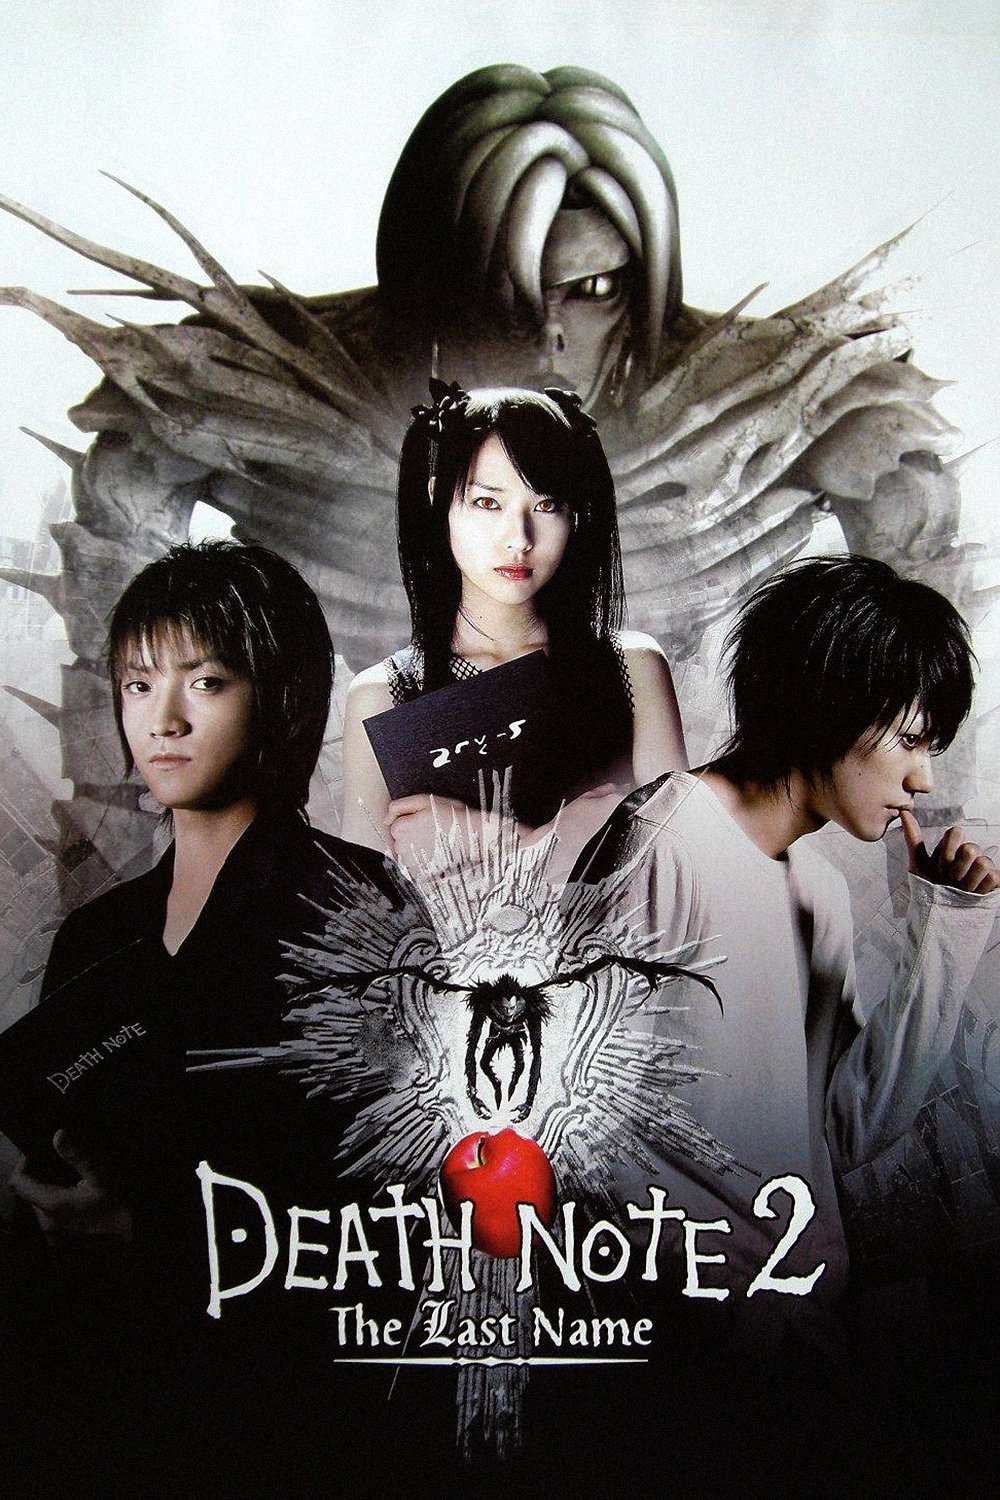 próximo filme de death note live action : r/orochinho